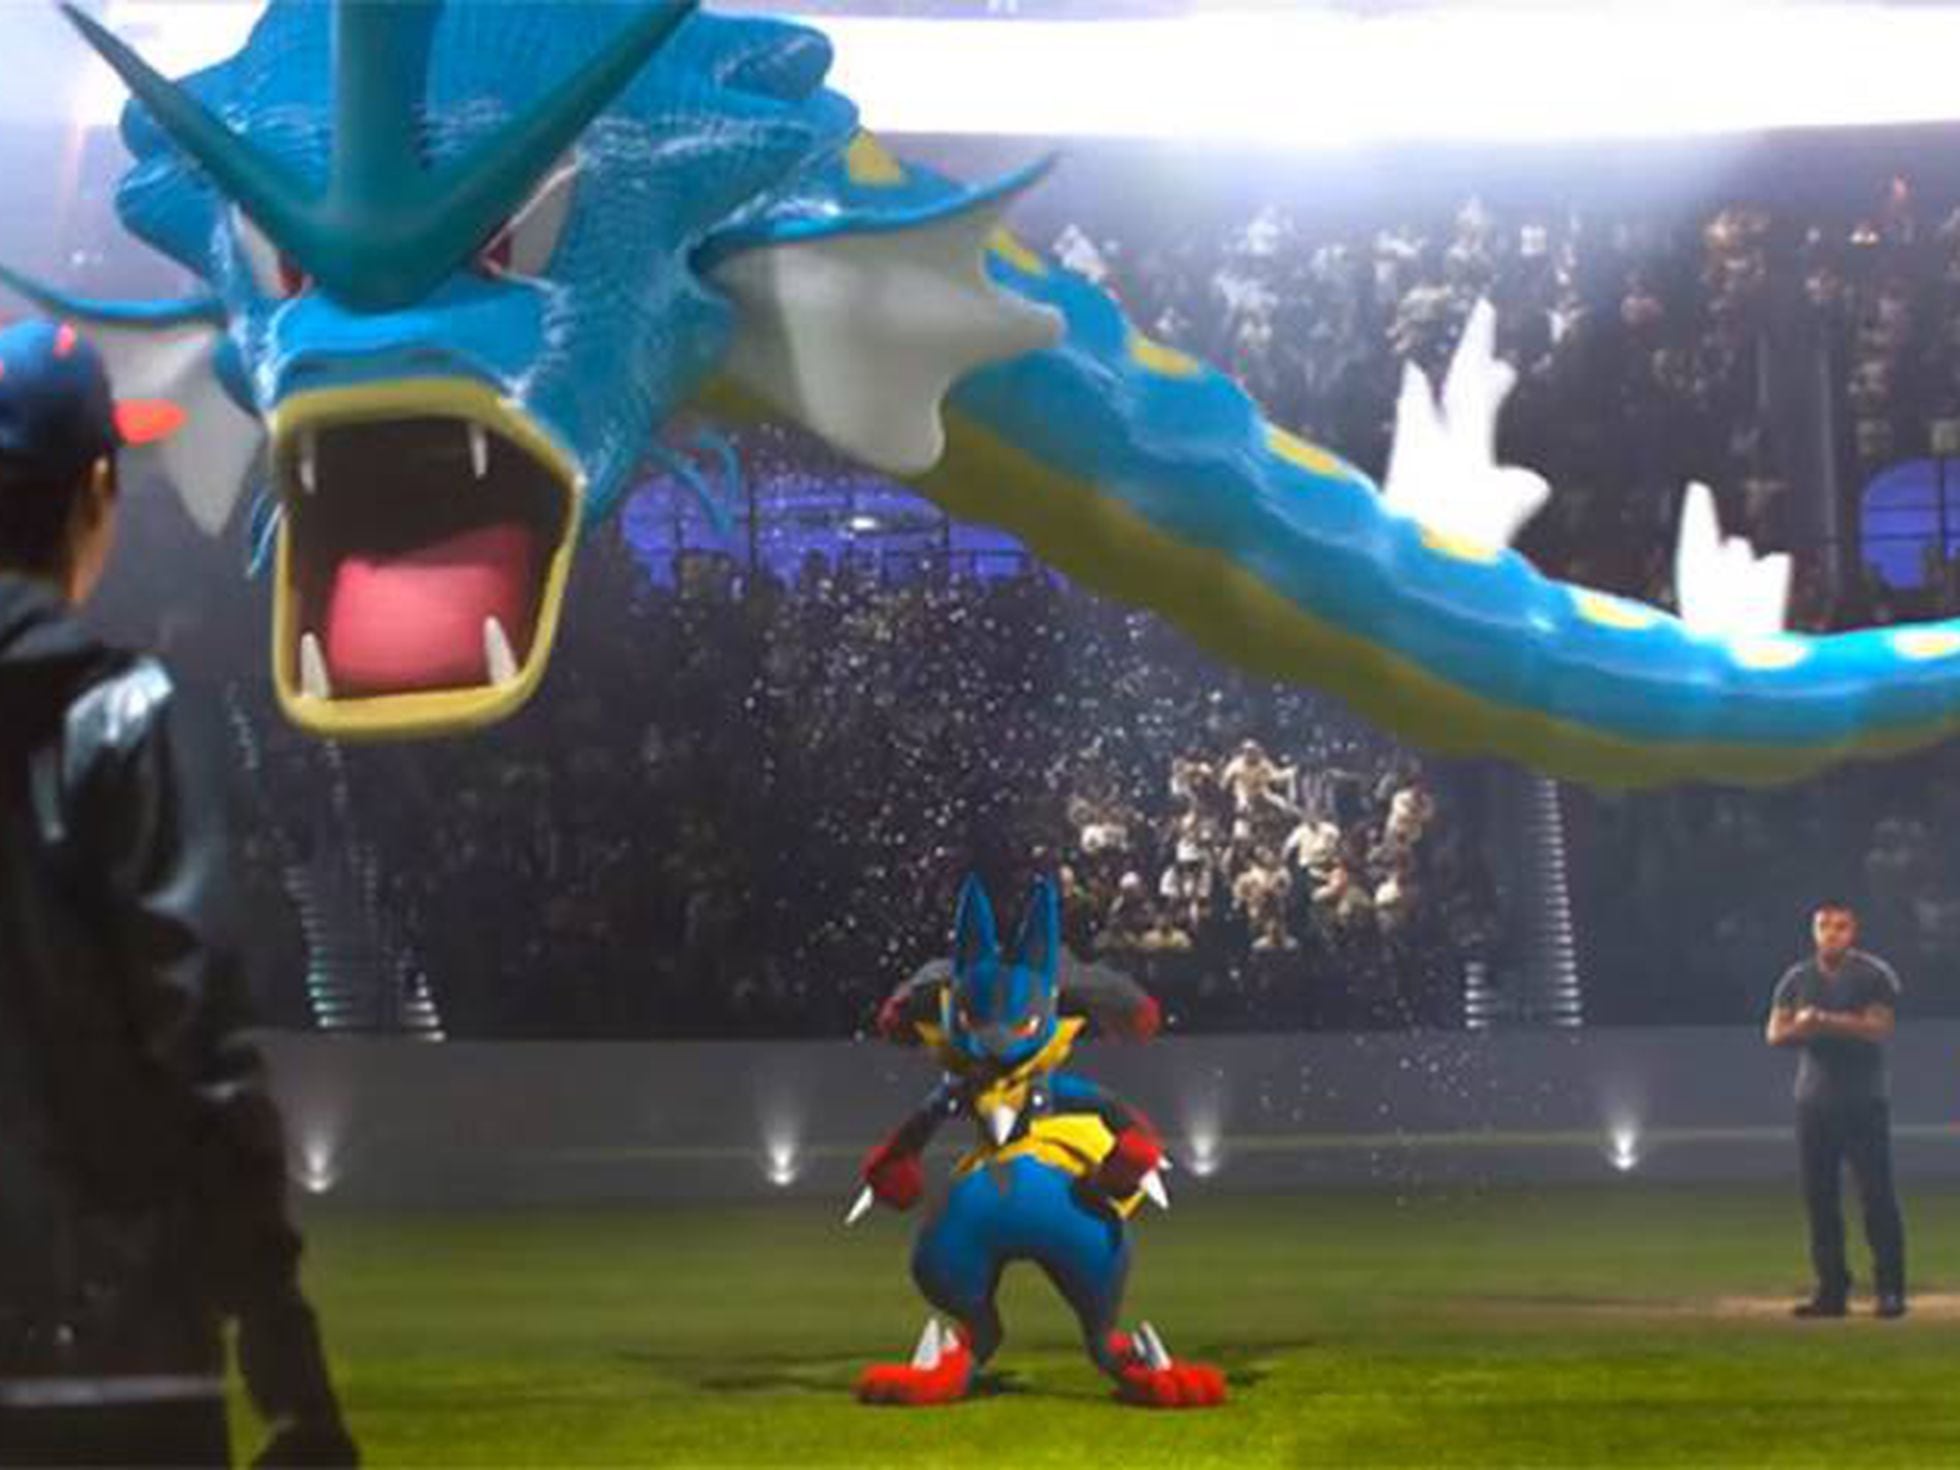 O que é o Pokémon Go e por que está causando tanto furor no mundo dos  games? - BBC News Brasil